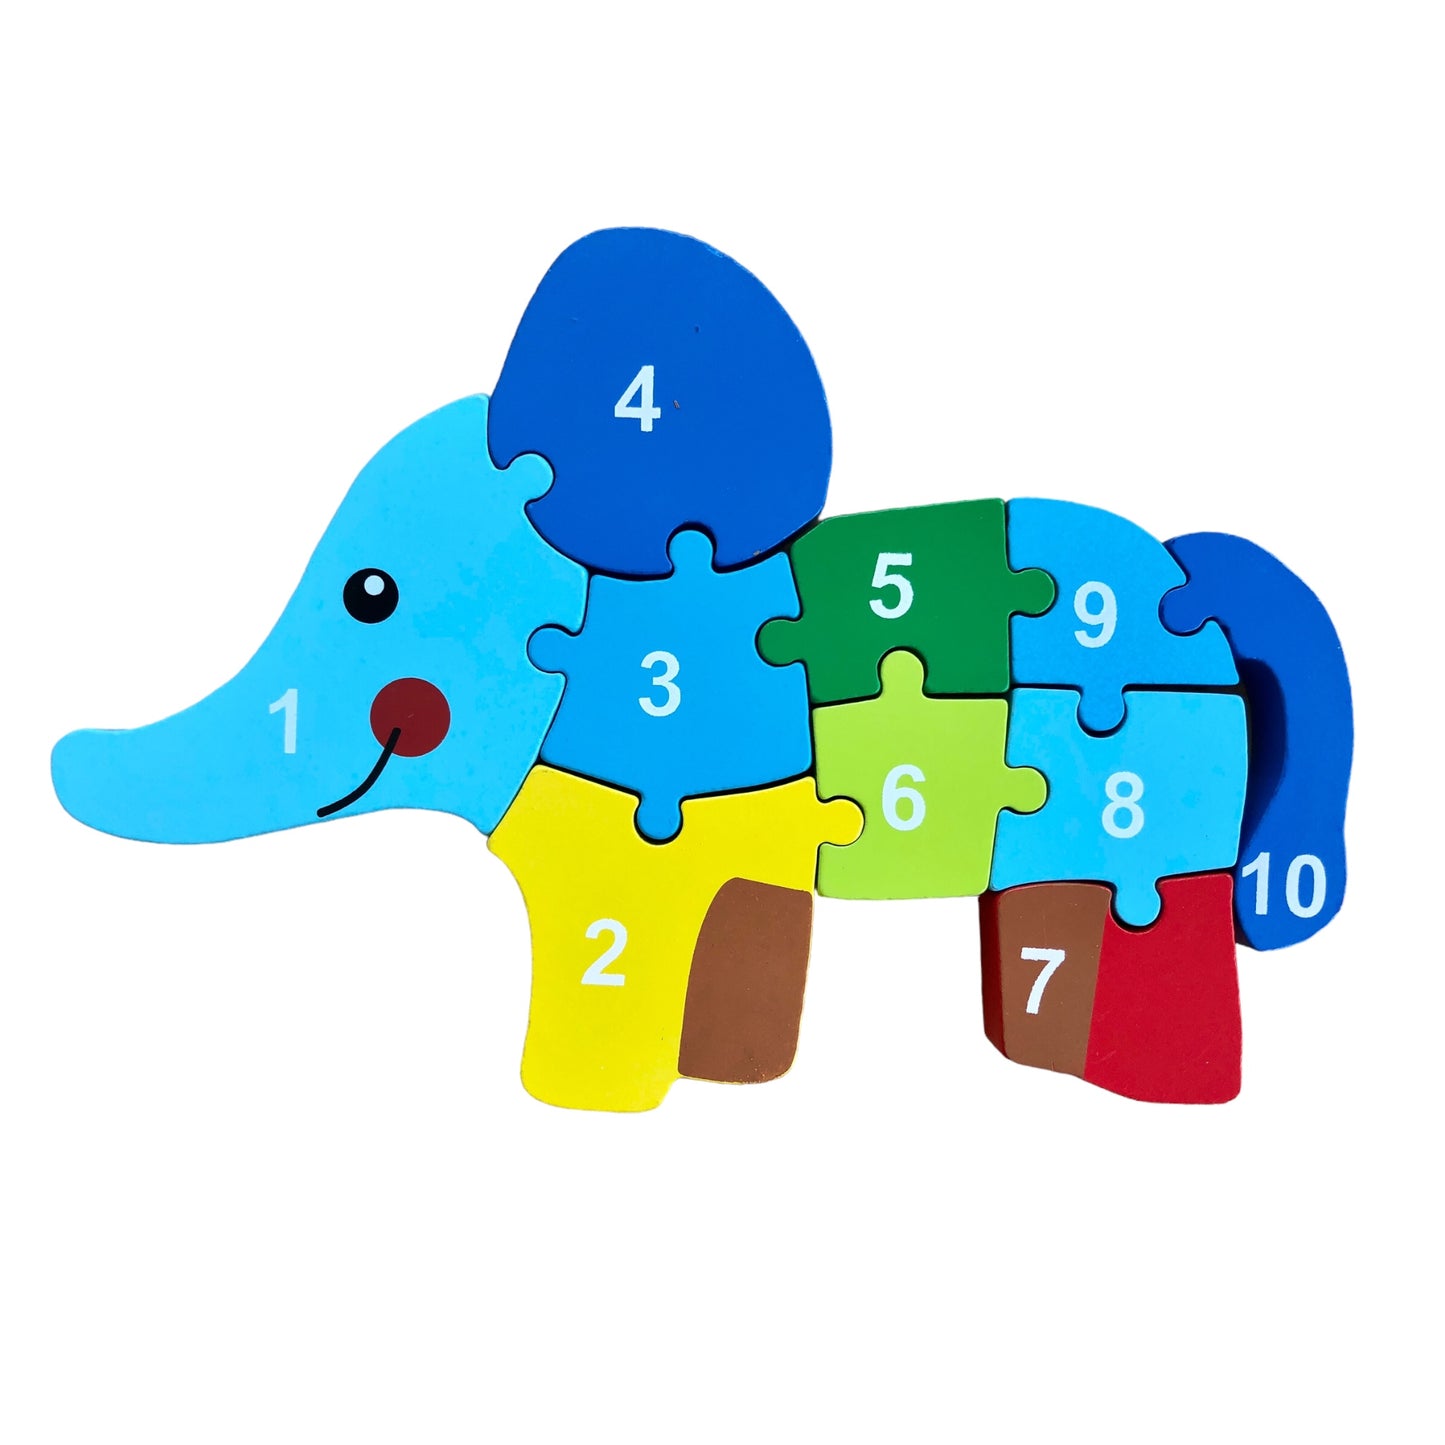 Elefantenpuzzle aus Holz mit den Zahlen 1 bis 10